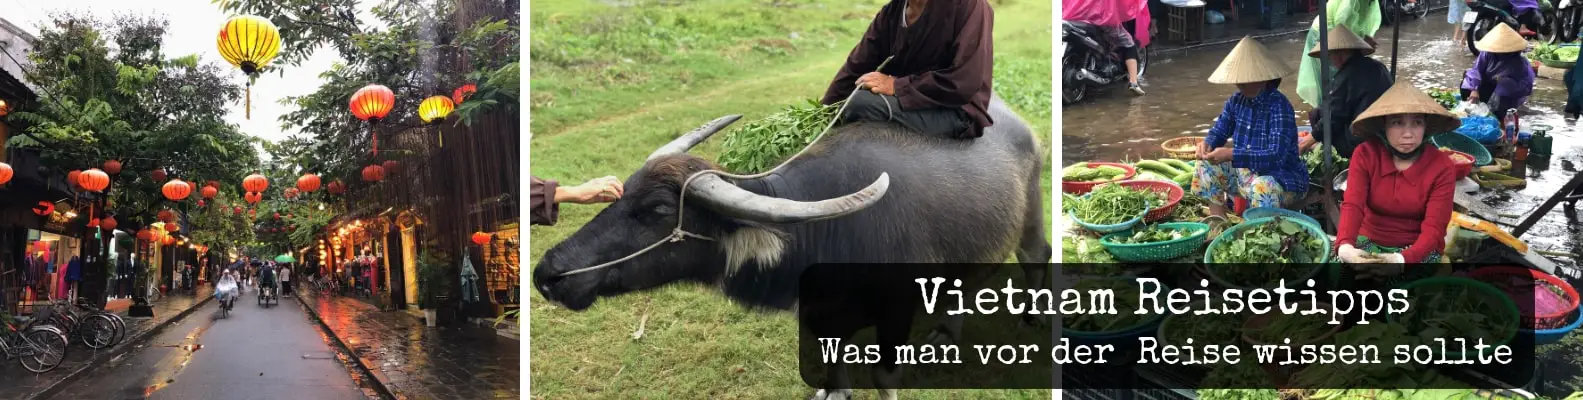 Vietnam Reisetipps